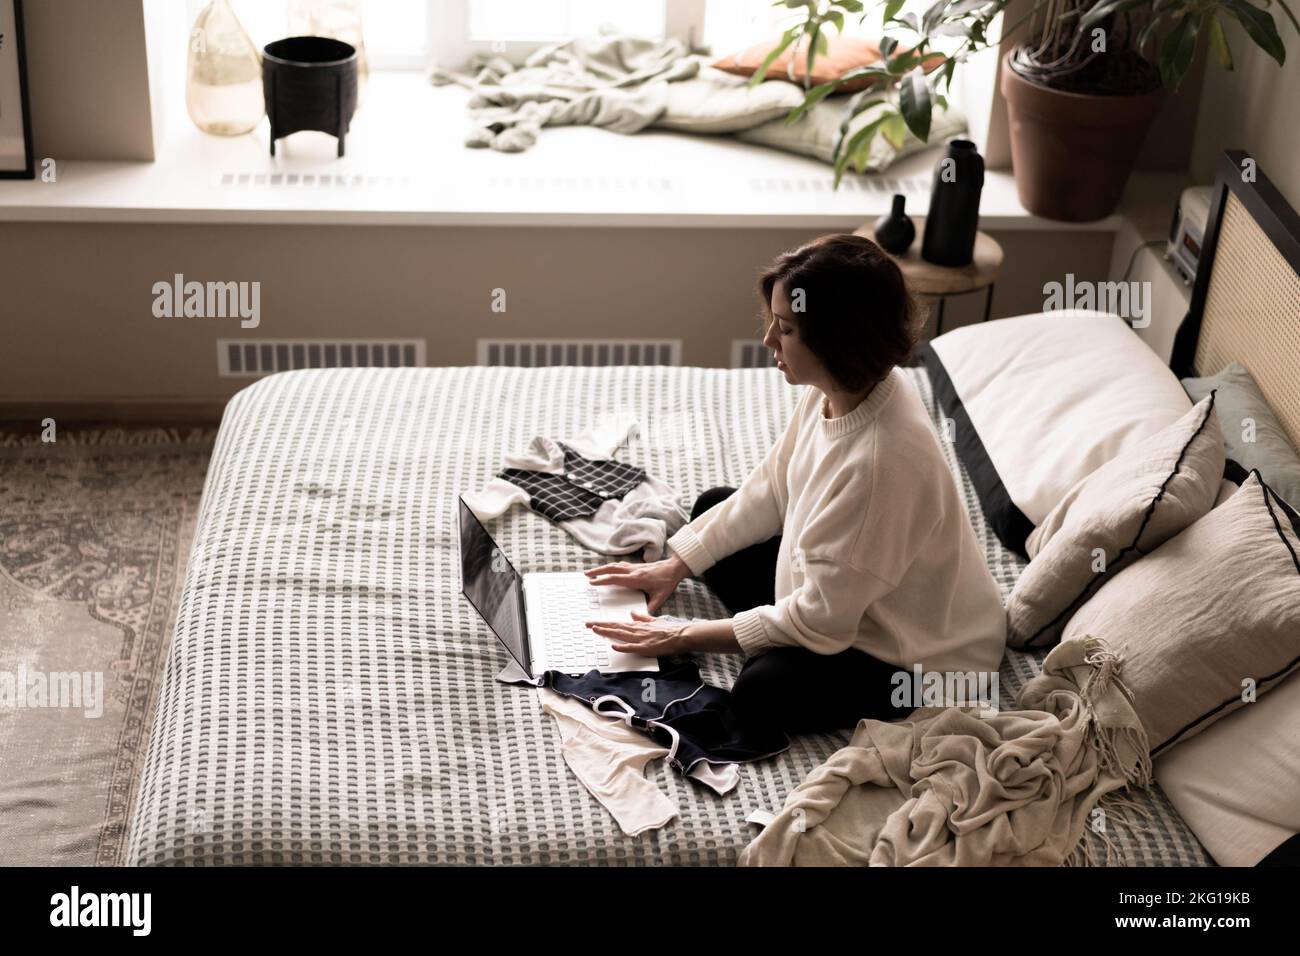 Eine Schwangere in einem warmen Pullover sitzt auf dem Bett und kauft über eine Online-Website Dinge für das Baby.das Konzept von E-Commerce, Holiday Shopping, Geschenkeinkauf für die Geburt eines Babys. Stockfoto